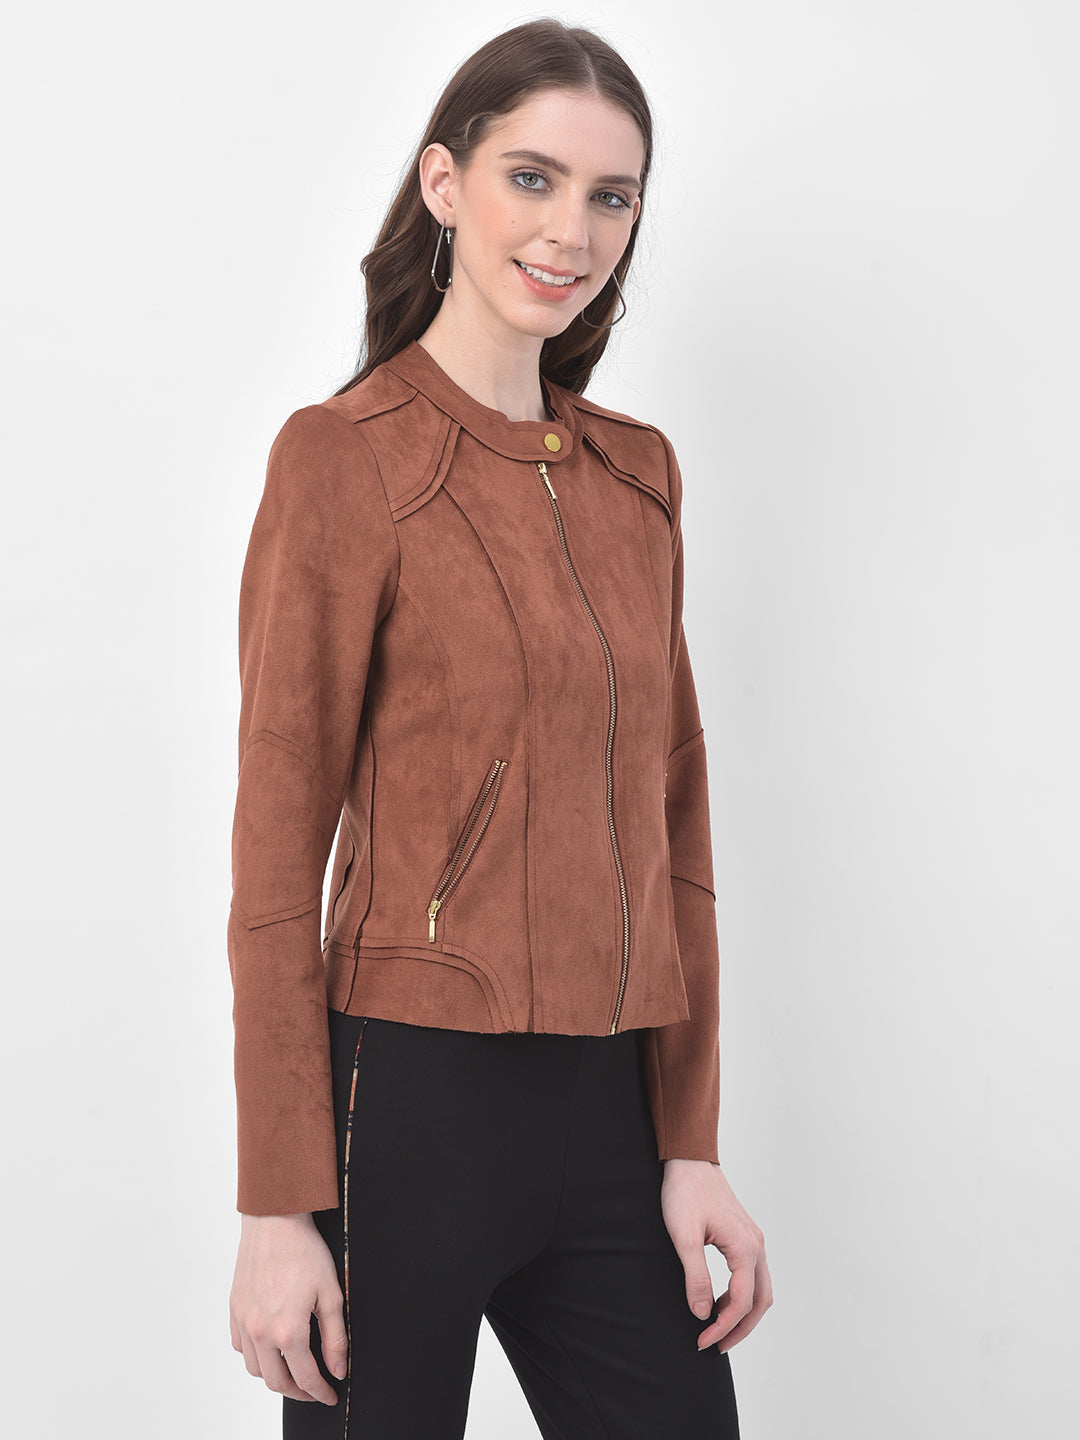 Brown Full Sleeve Straight Zip Jacket